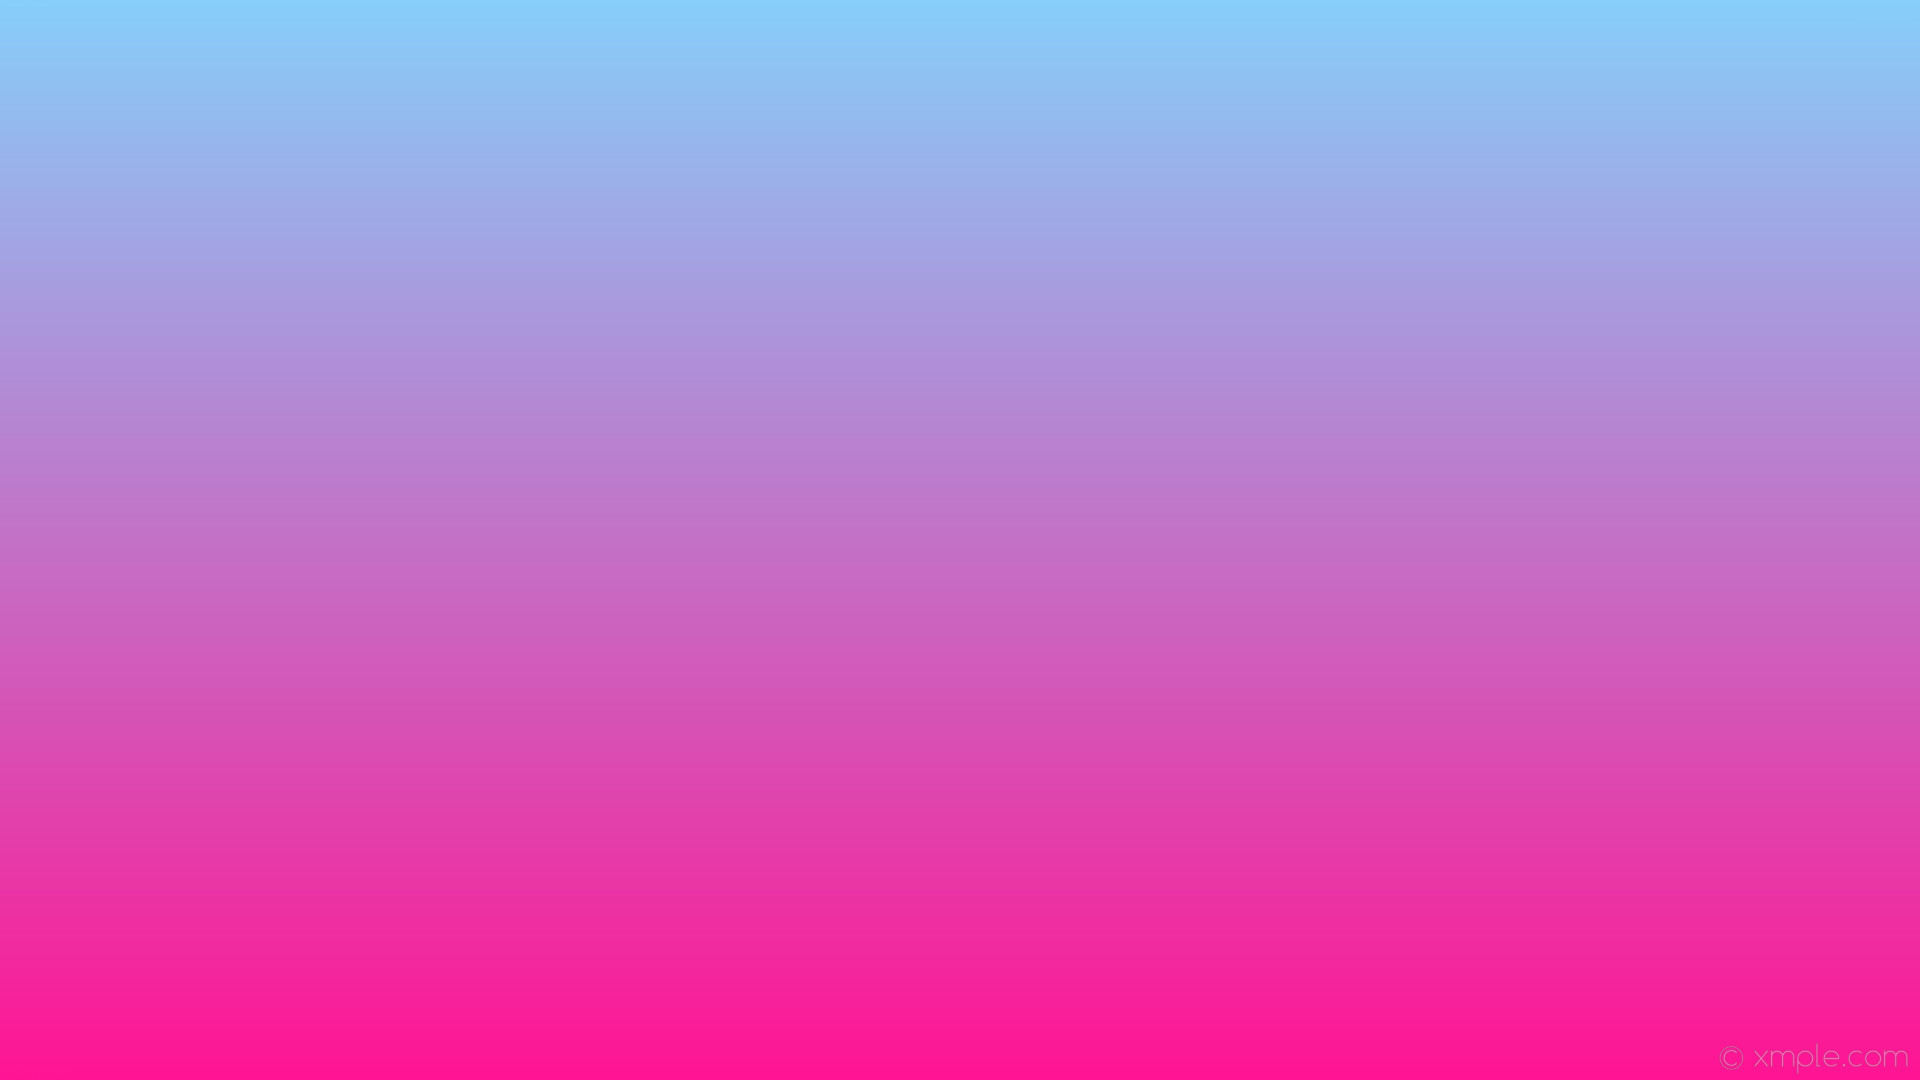 1920x1080 wallpaper blue linear gradient pink deep pink light sky blue #ff1493  #87cefa 270Â°